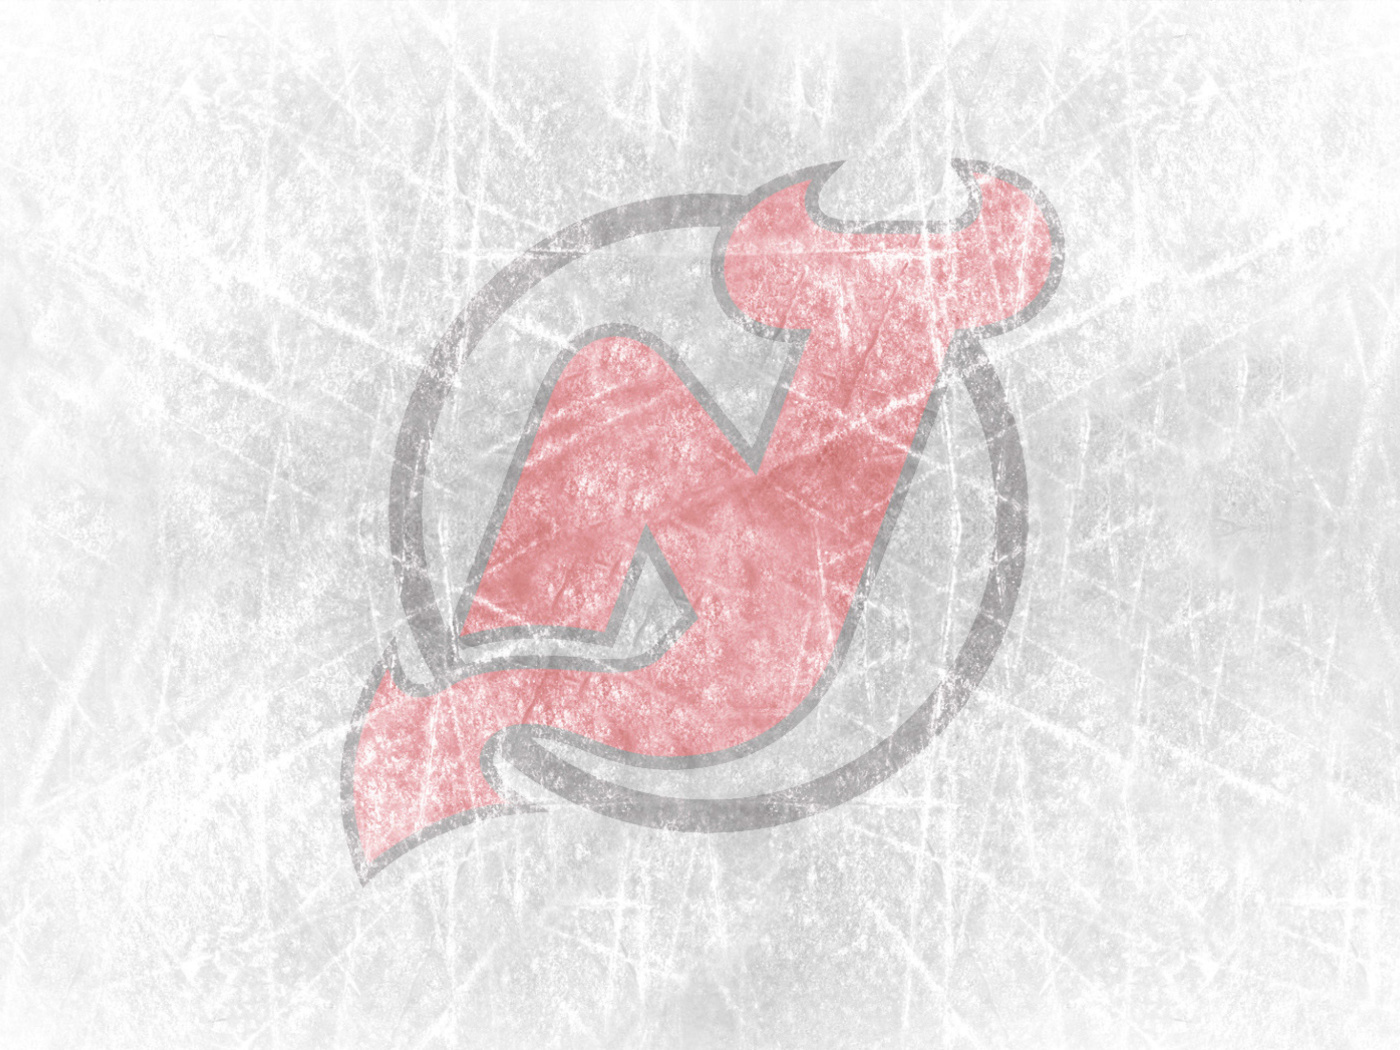 New Jersey Devils Hockey Team wallpaper 1400x1050